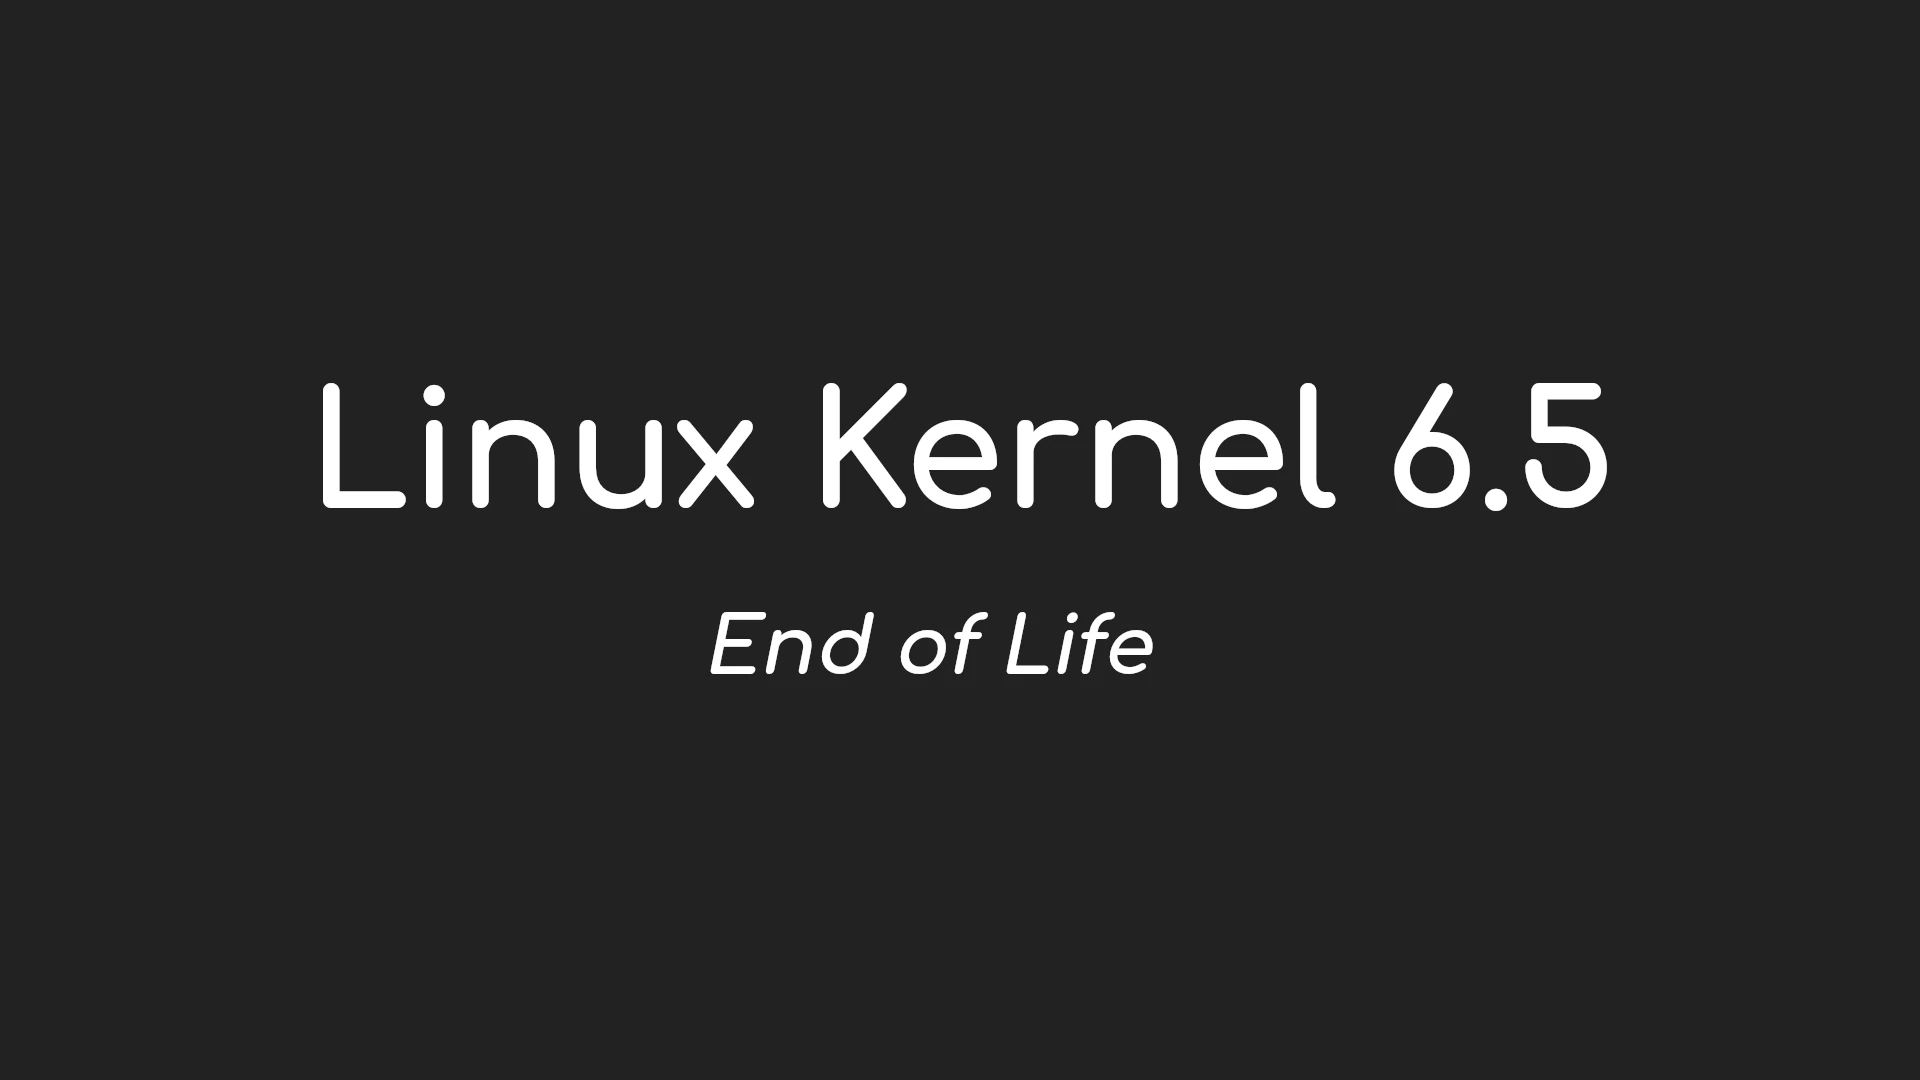 Il kernel Linux 6.5 raggiunge la fine del suo ciclo di vita